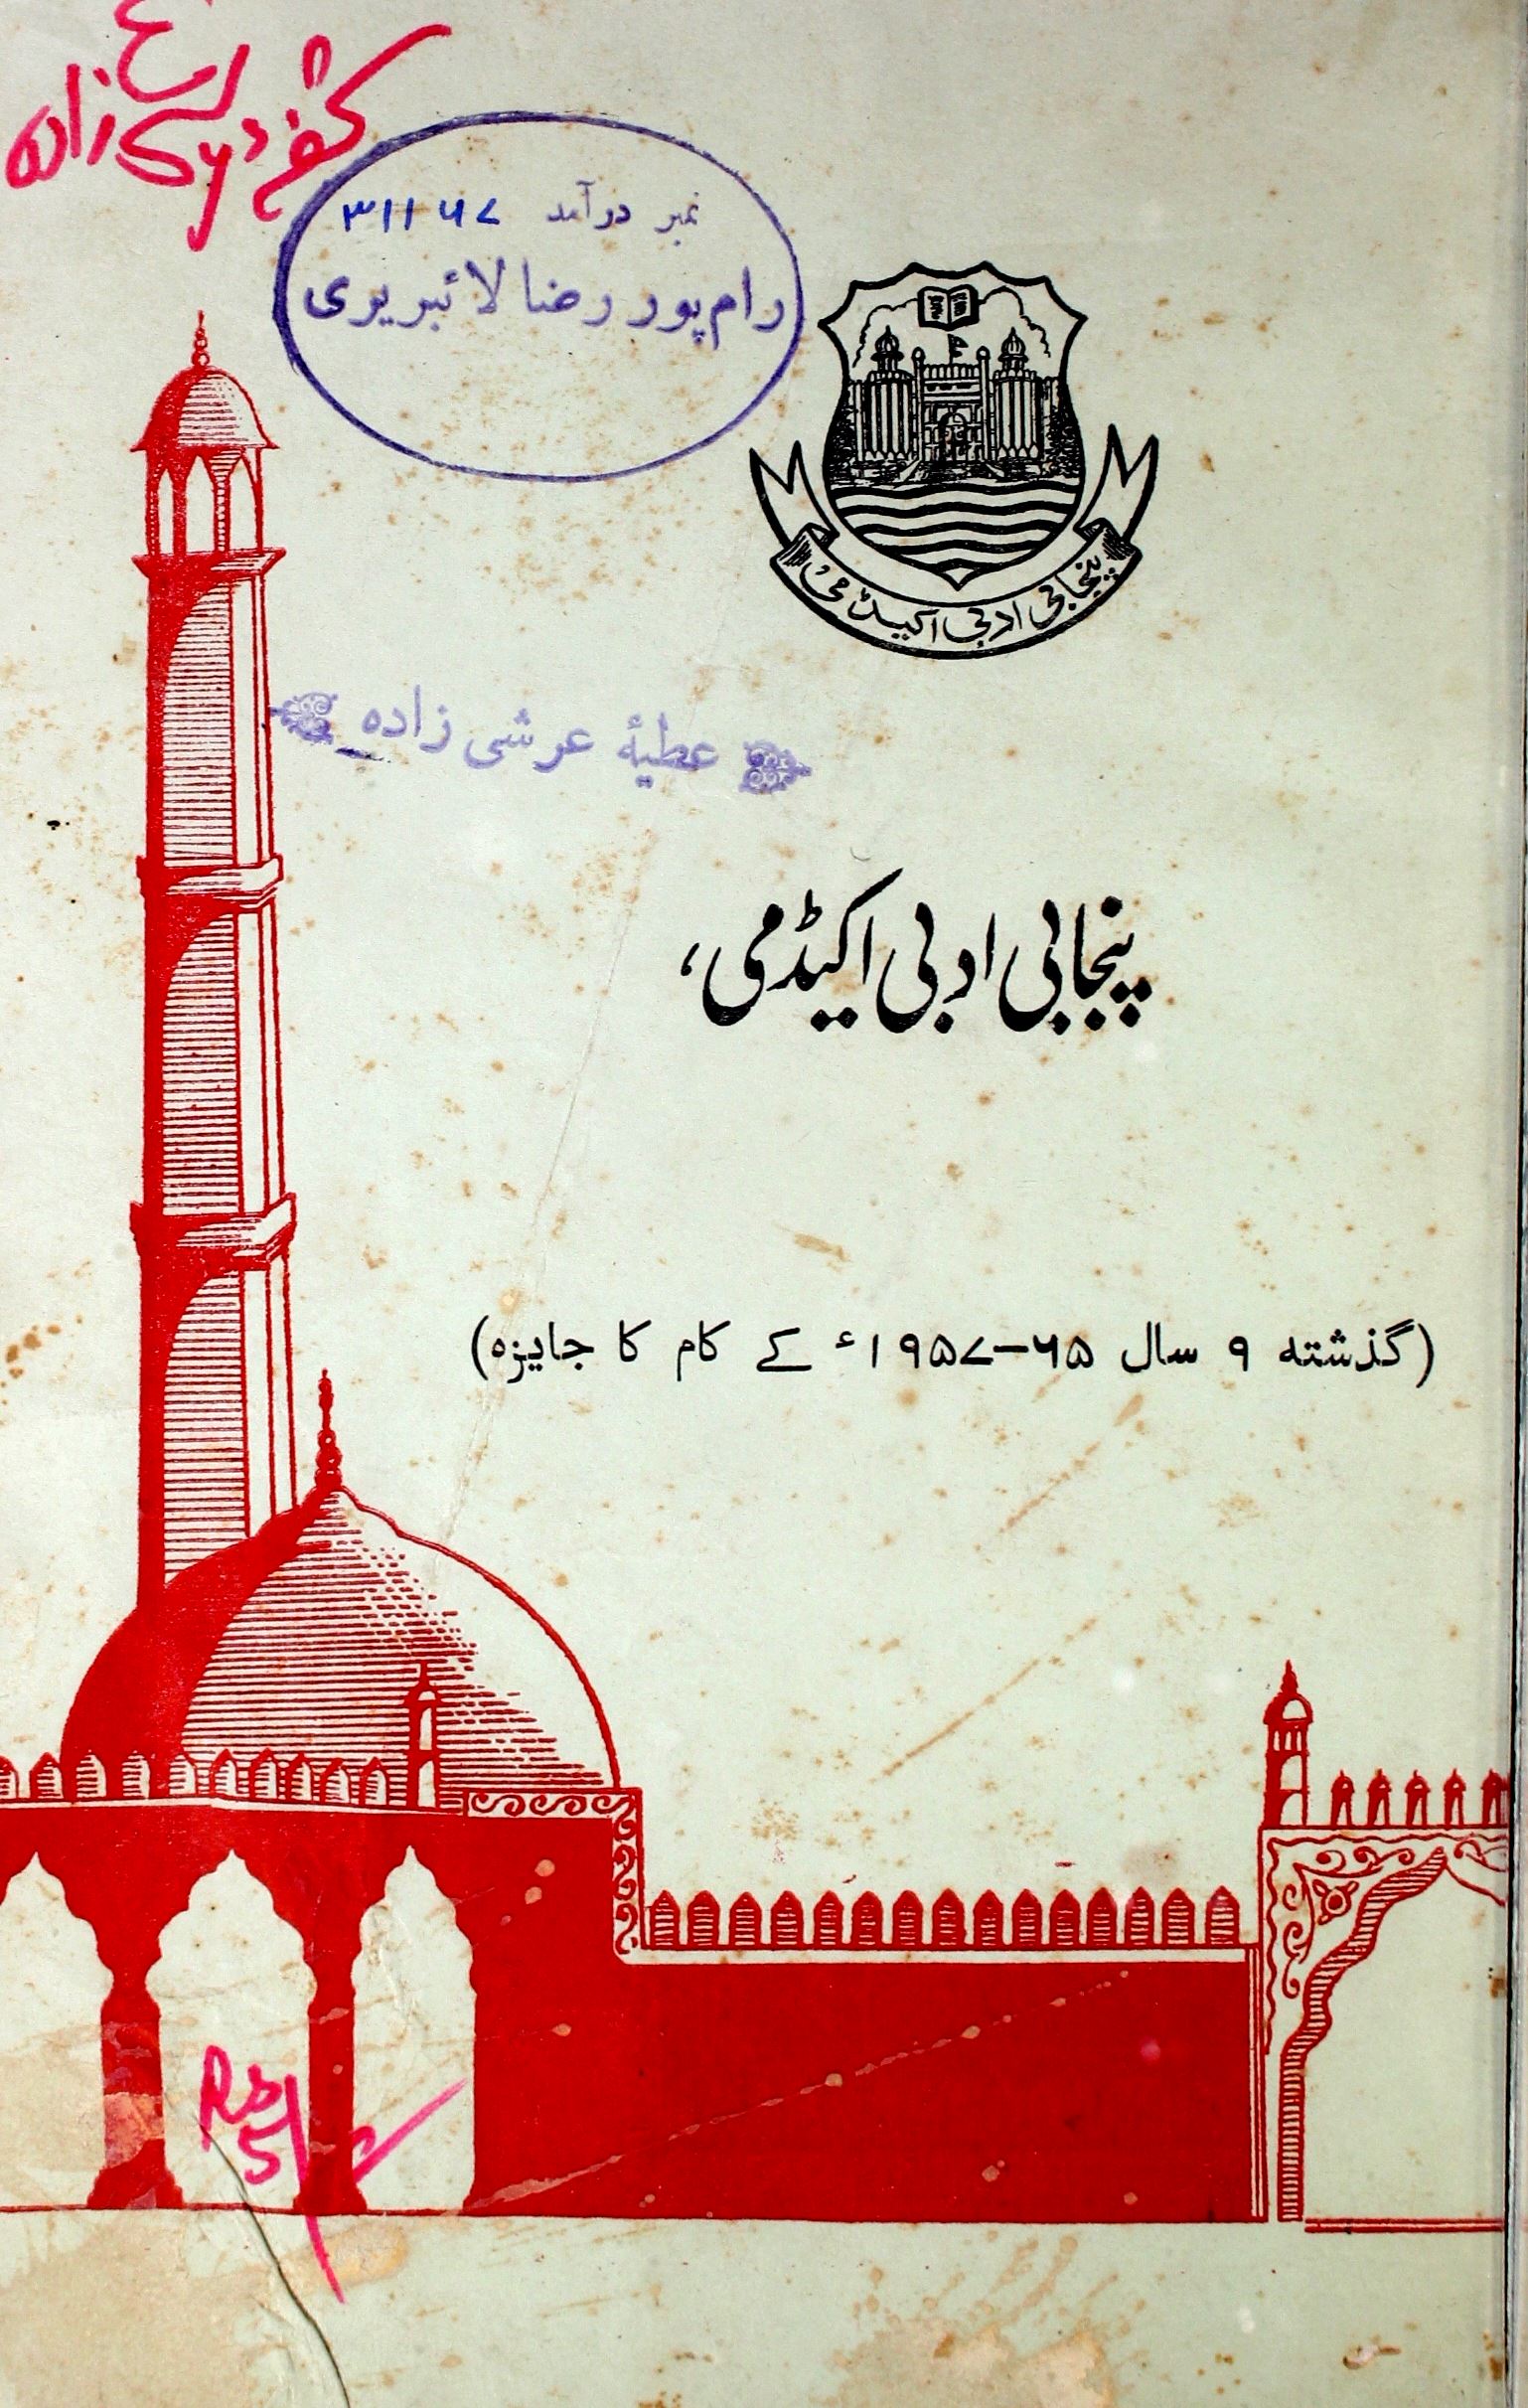 پنجابی ادبی اکیڈمی 65-1957 کے کام کا جایزہ